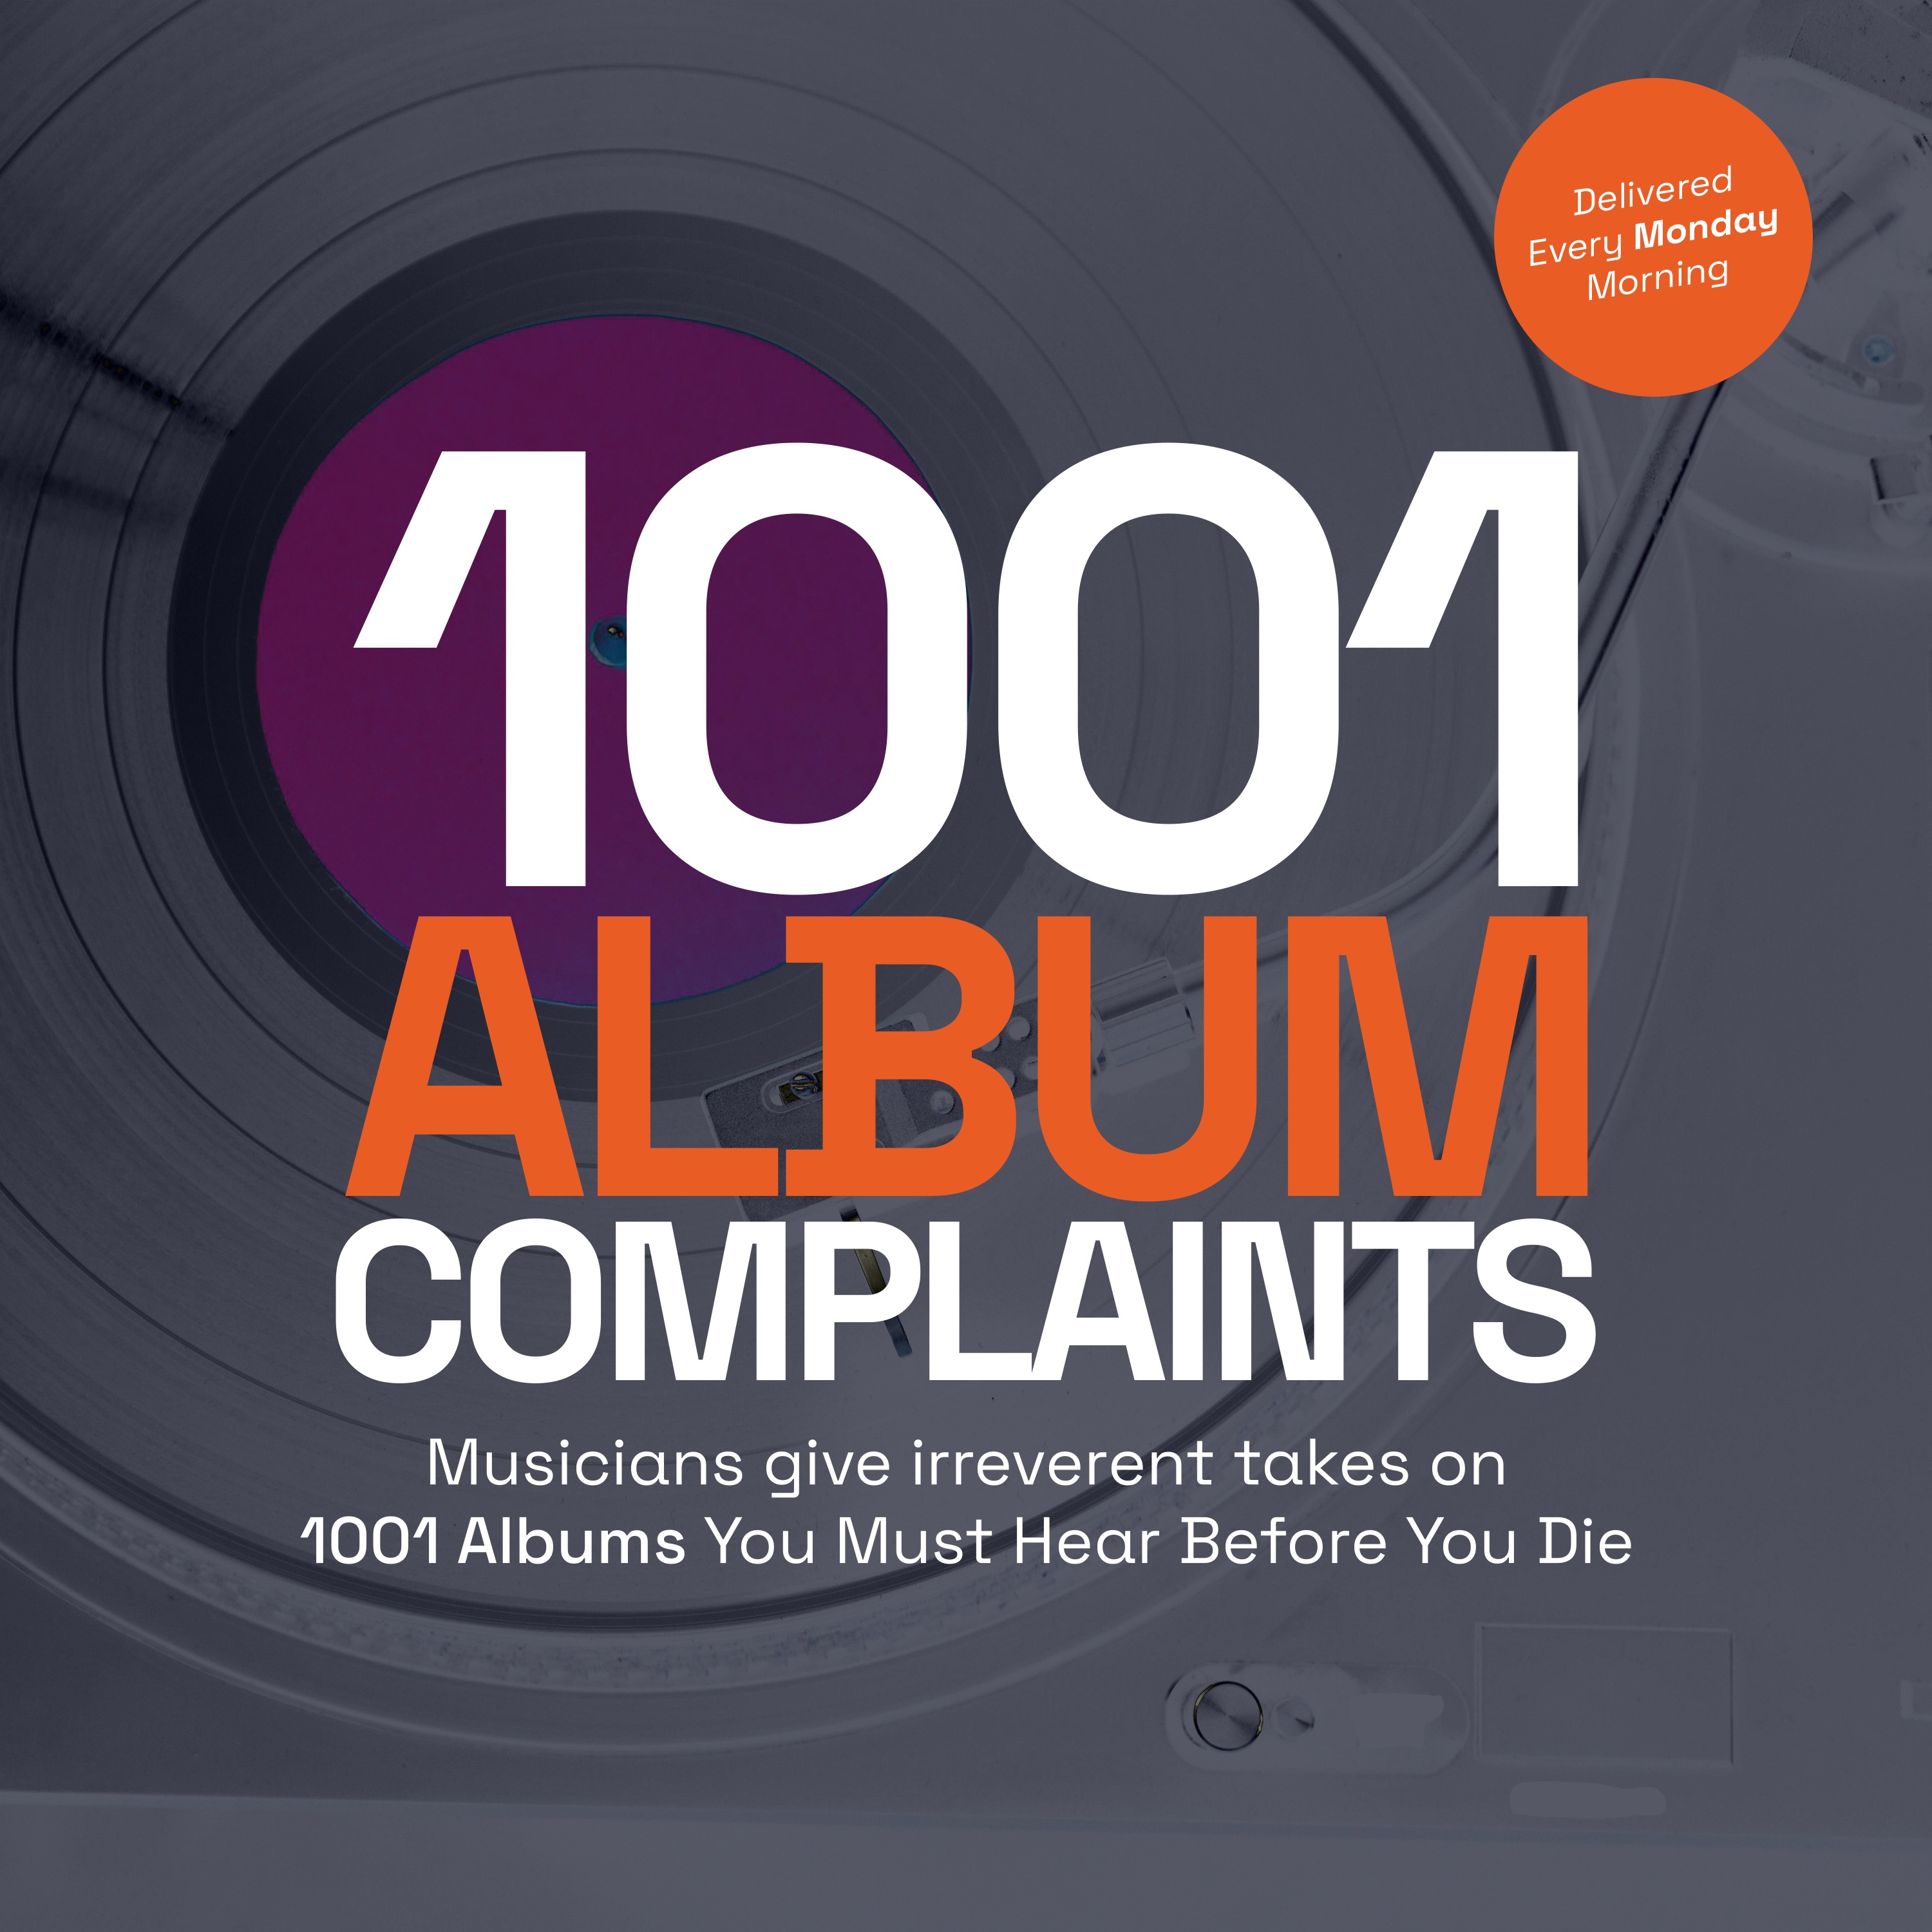 Show artwork for 1001 Album Complaints